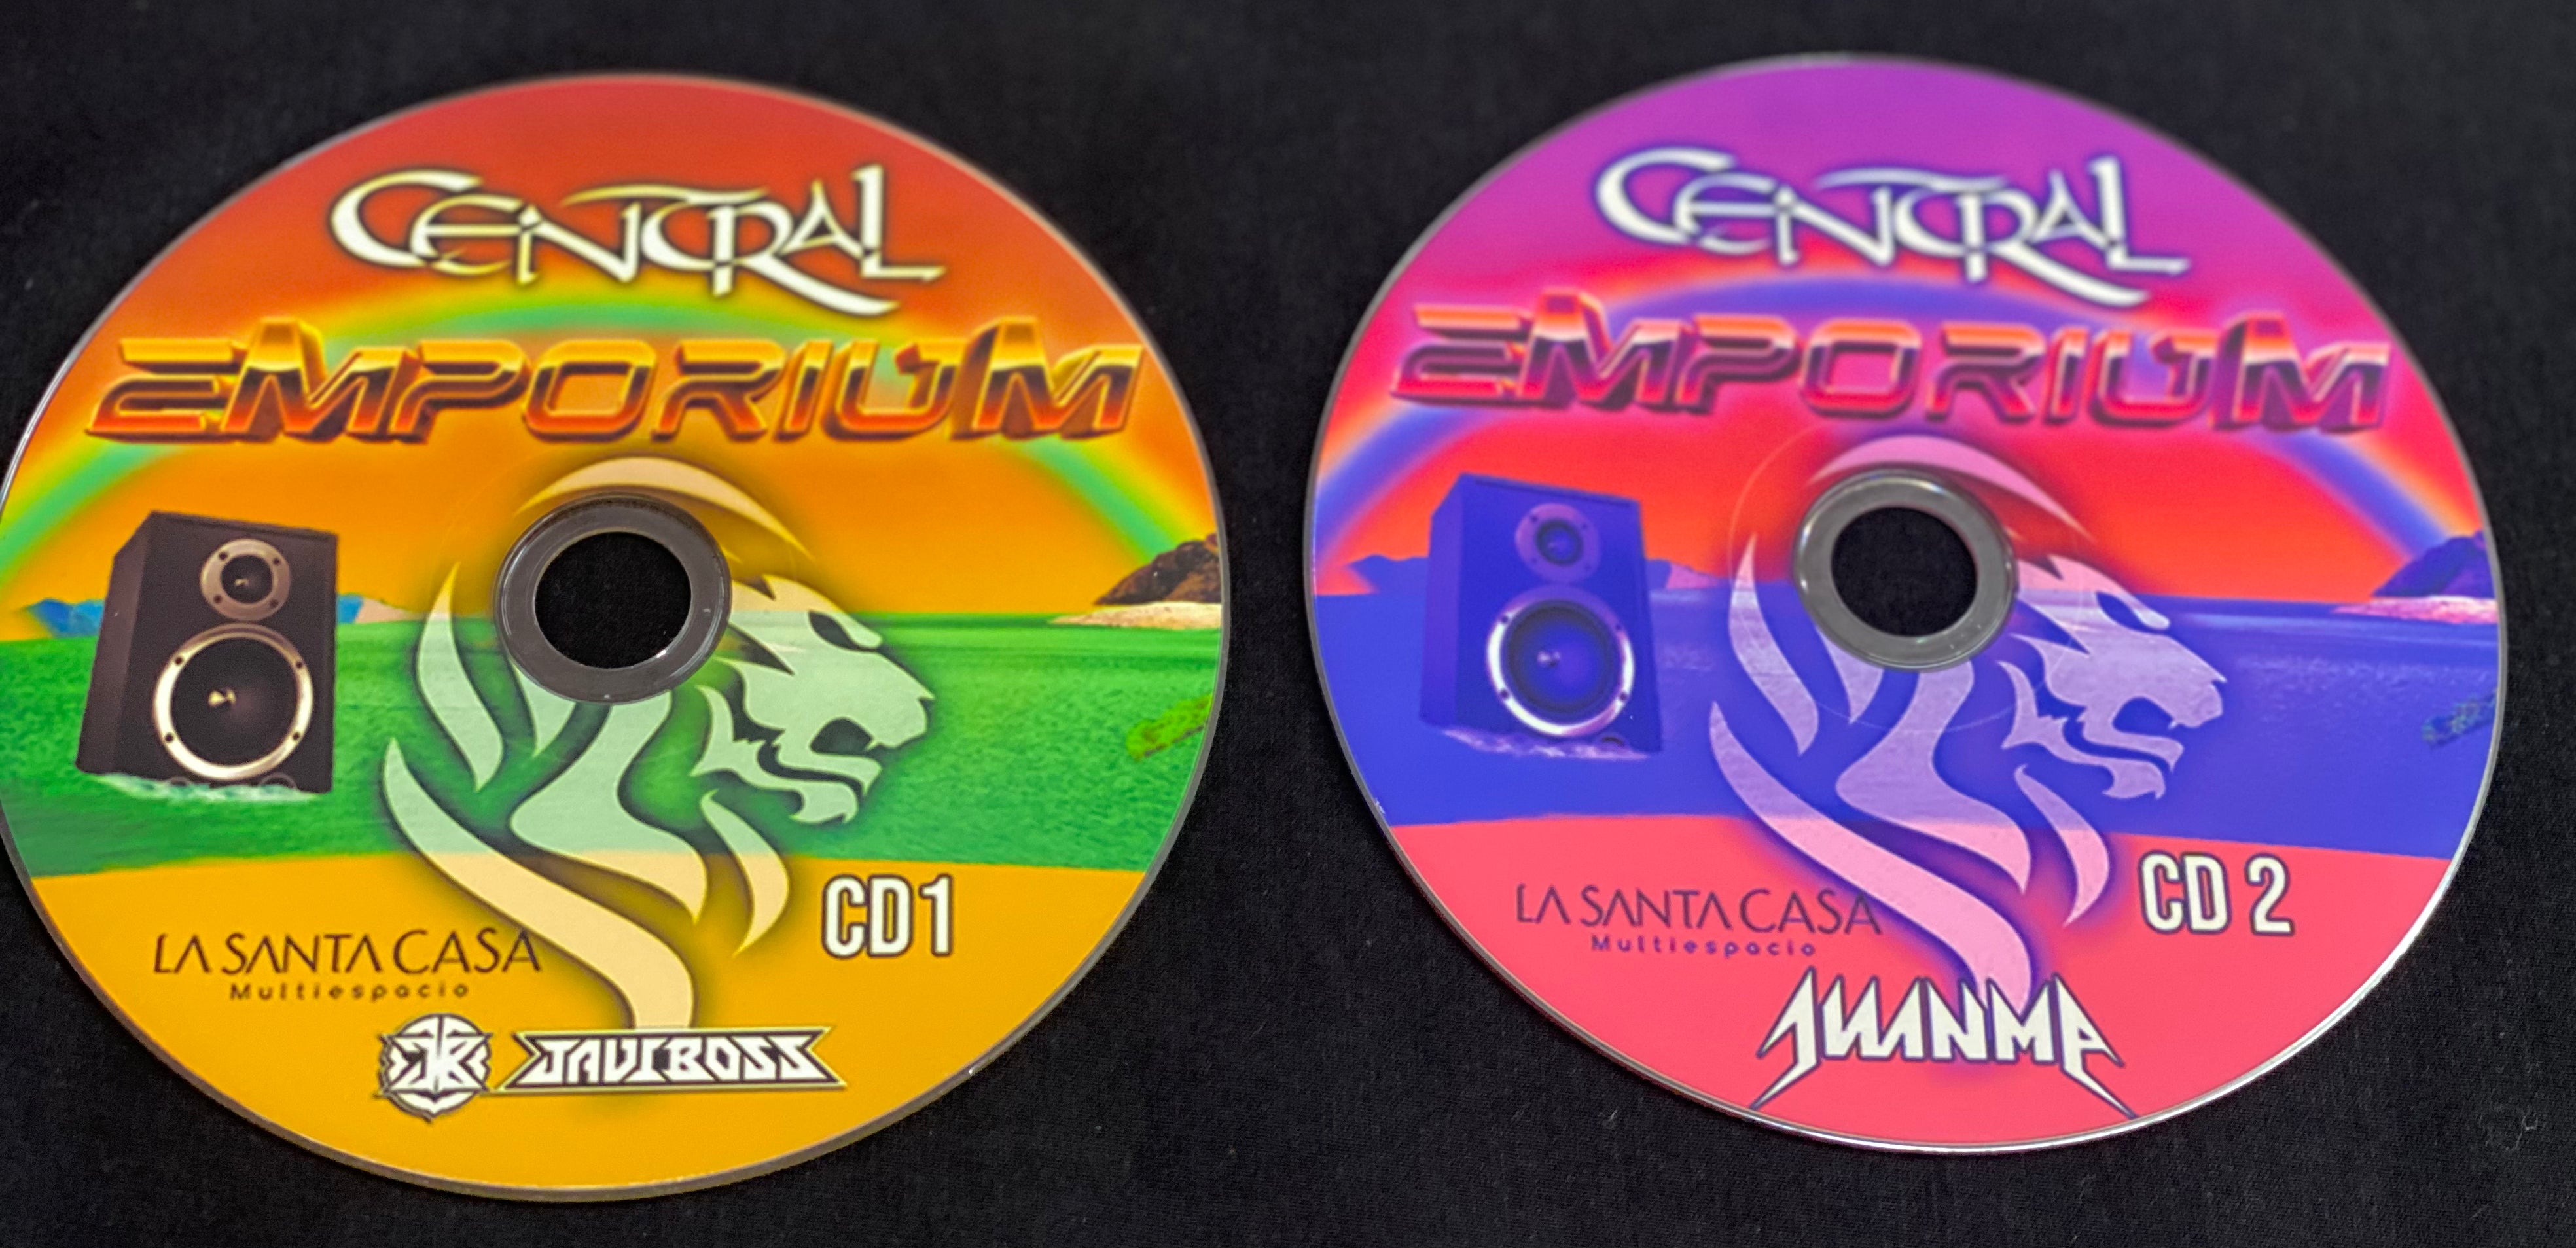 CD EMP CD 1 y 2 disponibles